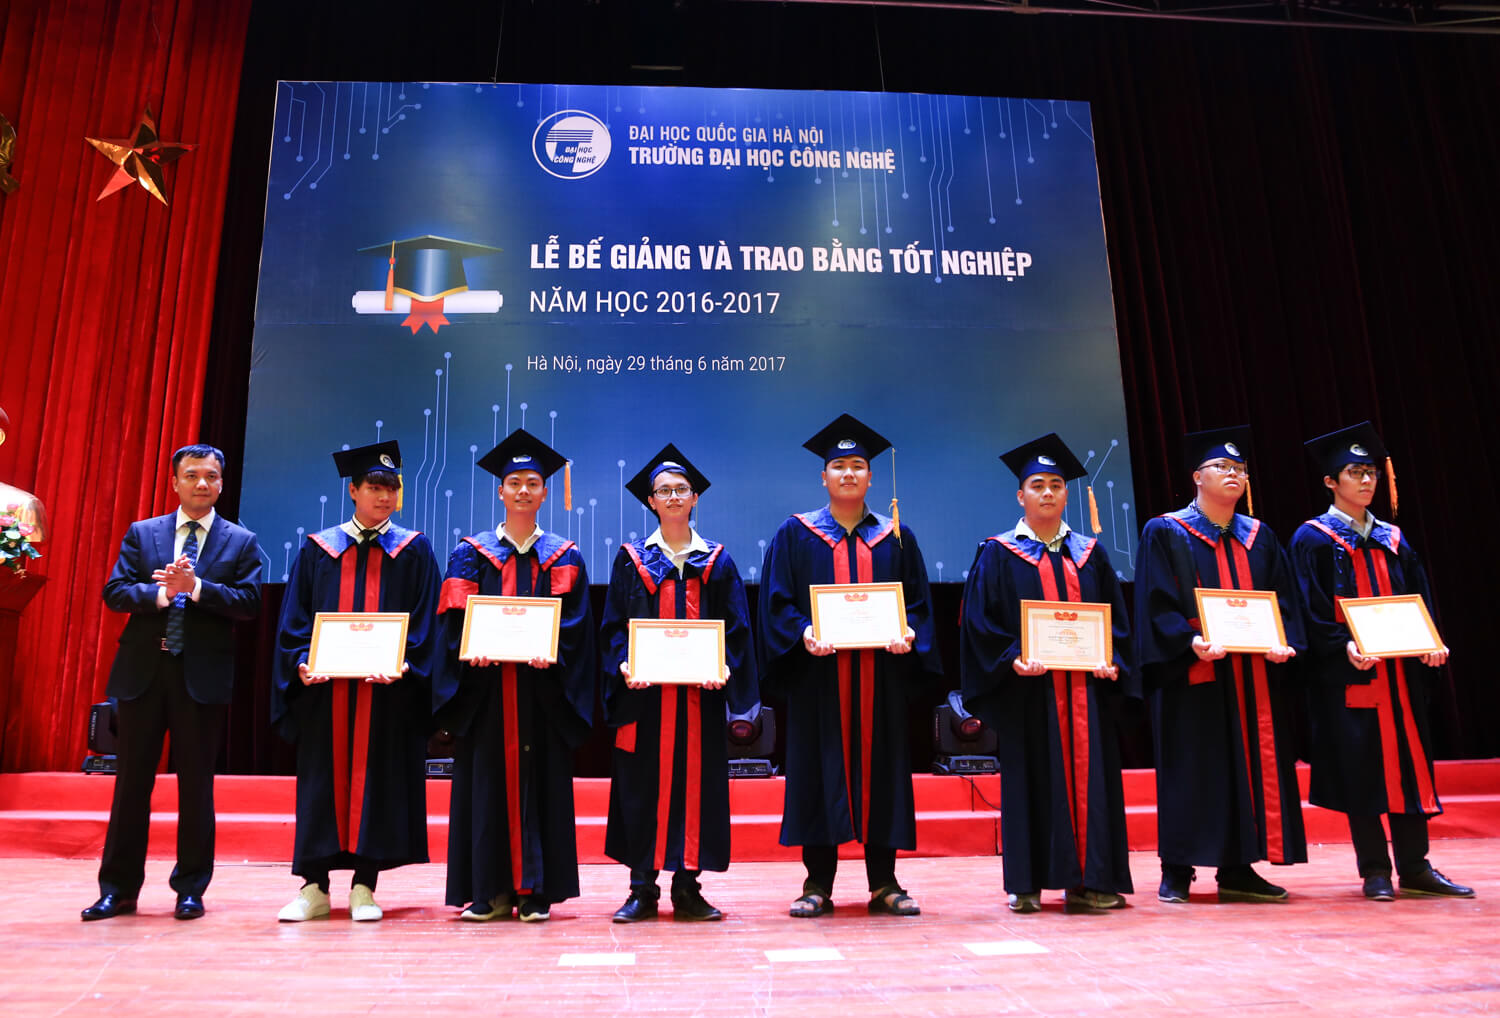 Trường Đại học Công nghệ - Hà Nội (UET)